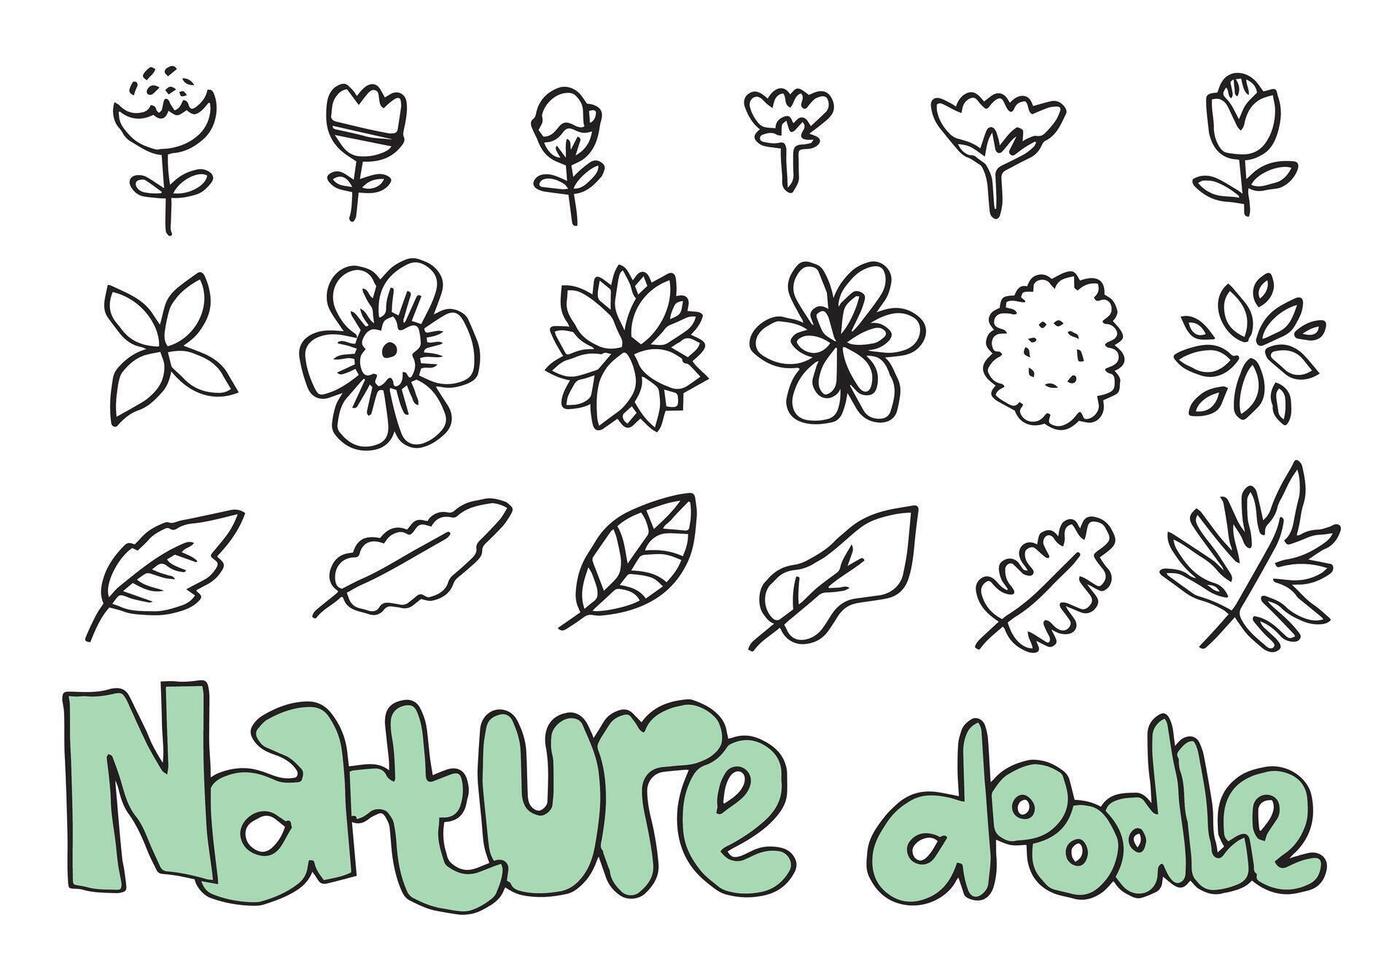 un colección de dibujado a mano flor imágenes tal como campana flor, crisantemos, girasoles, algodón flores, y tropical hojas vector